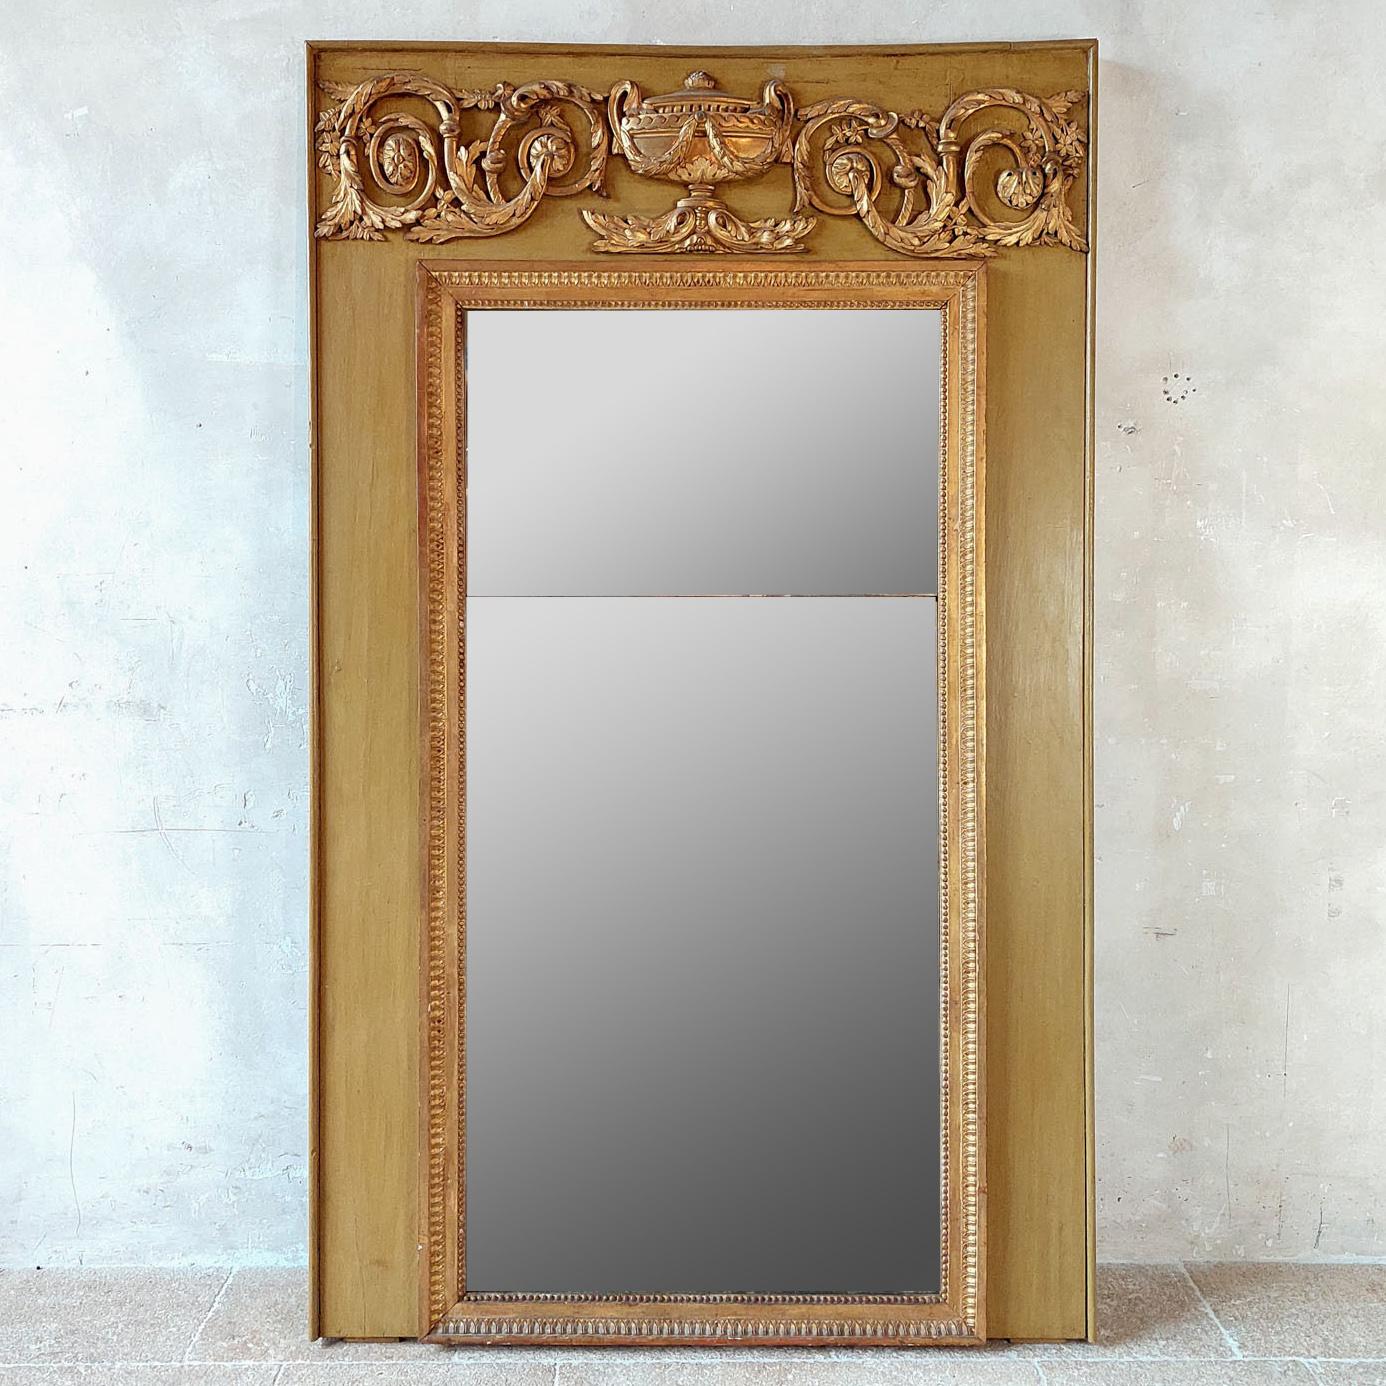 Louis Seize Trumeau-Spiegel aus dem 18. Jahrhundert. Dieser antike Kaminsims-Spiegel mit vergoldetem Rand und Ornamenten hat eine ockergelbe/grüne Patina und originales zweiteiliges Mercure-Spiegelglas aus dem 18.

H 195 x B 119 cm